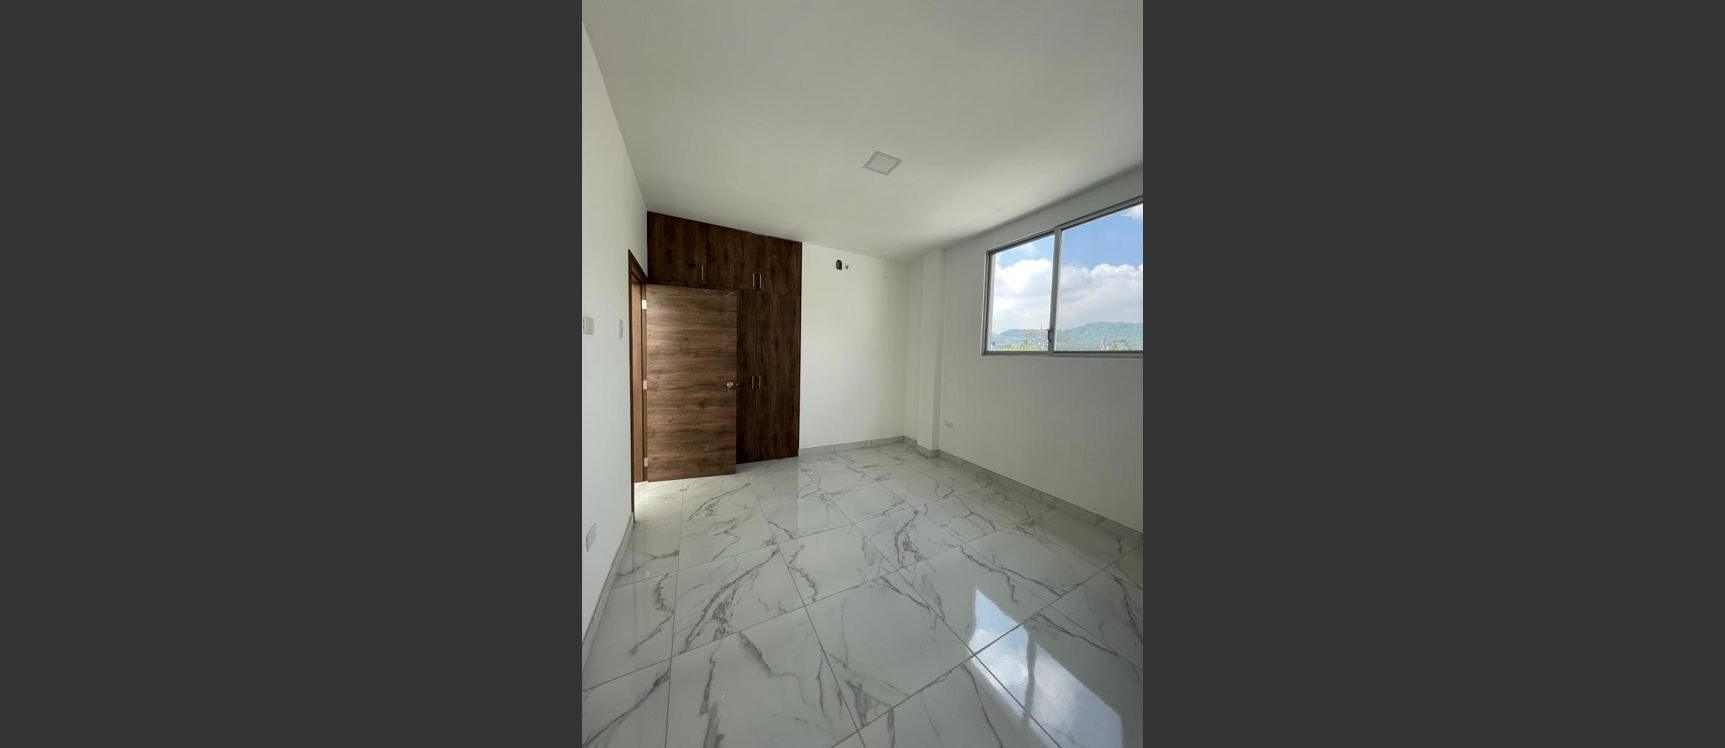 GeoBienes - Casa en venta ubicada en al Urbanización Santa Cecilia, Ceibos - Plusvalia Guayaquil Casas de venta y alquiler Inmobiliaria Ecuador